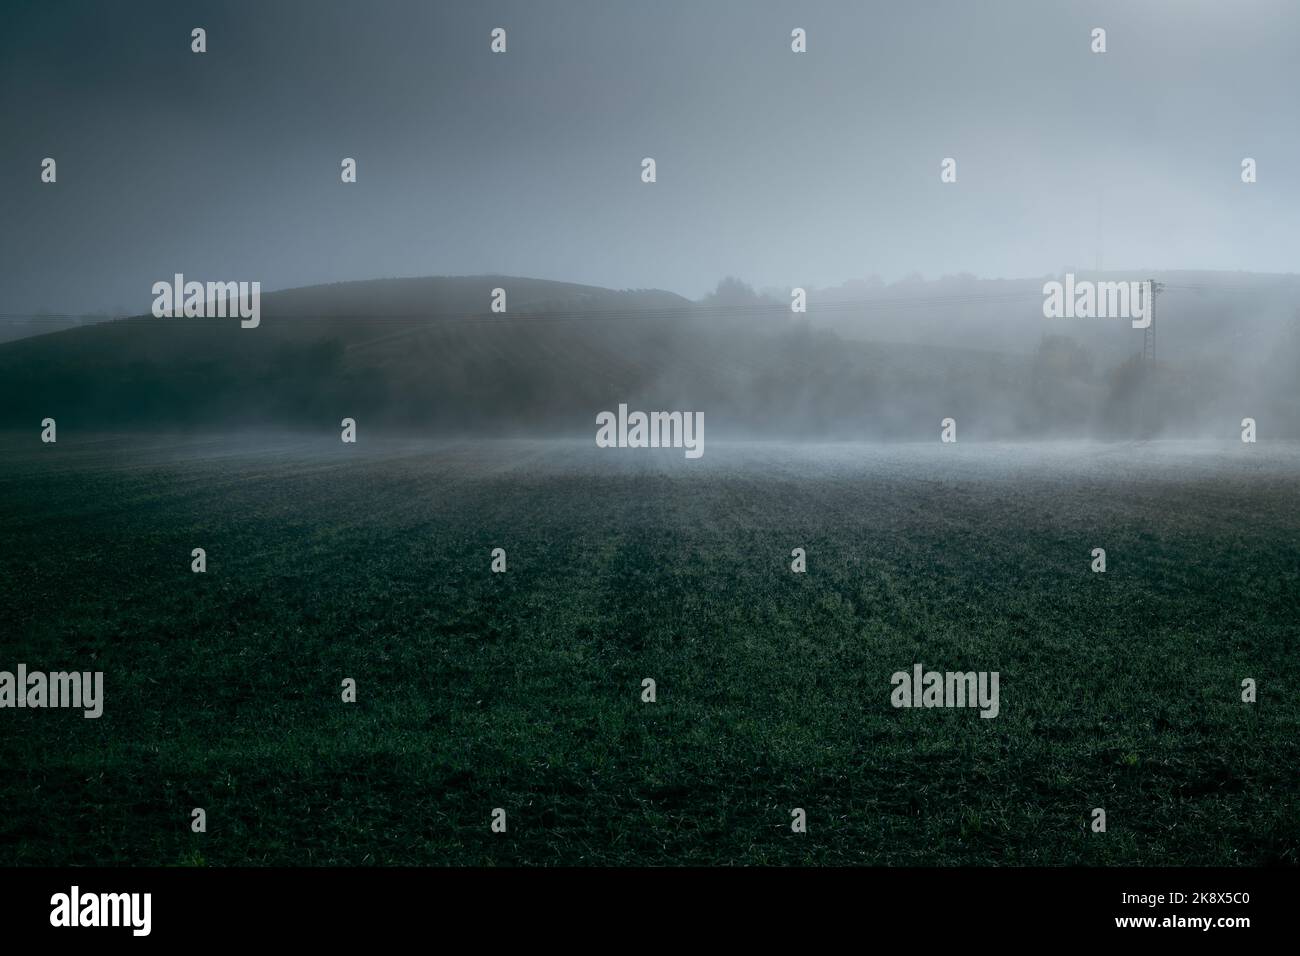 Nebelwolken driften nach einer kalten Nacht in dunkler Atmosphäre über ein Feld von frischem Grün vor flachen Hügeln. Stockfoto